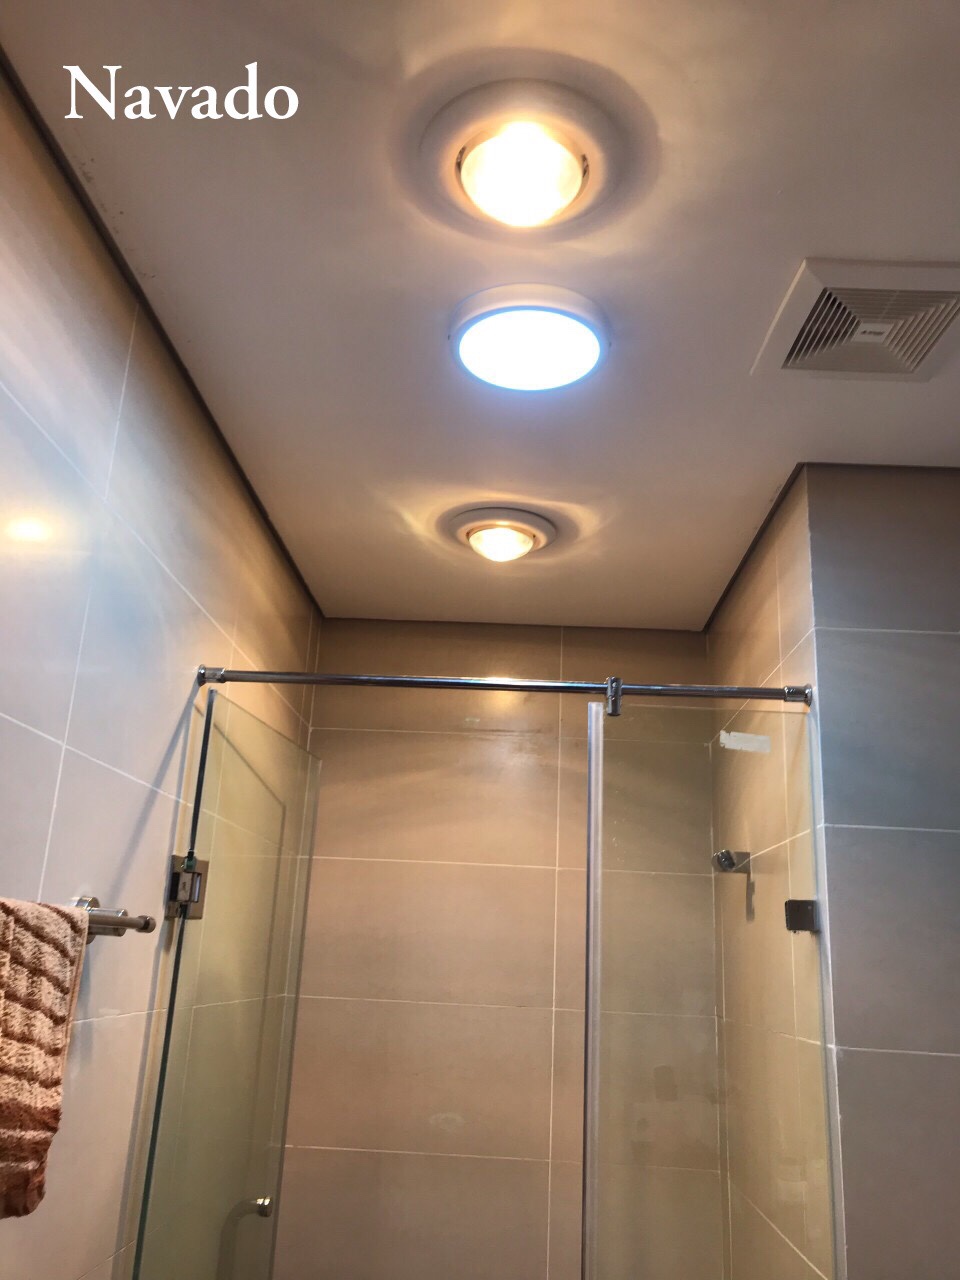 Đèn sưởi phòng tắm lắp trong vách tắm kính